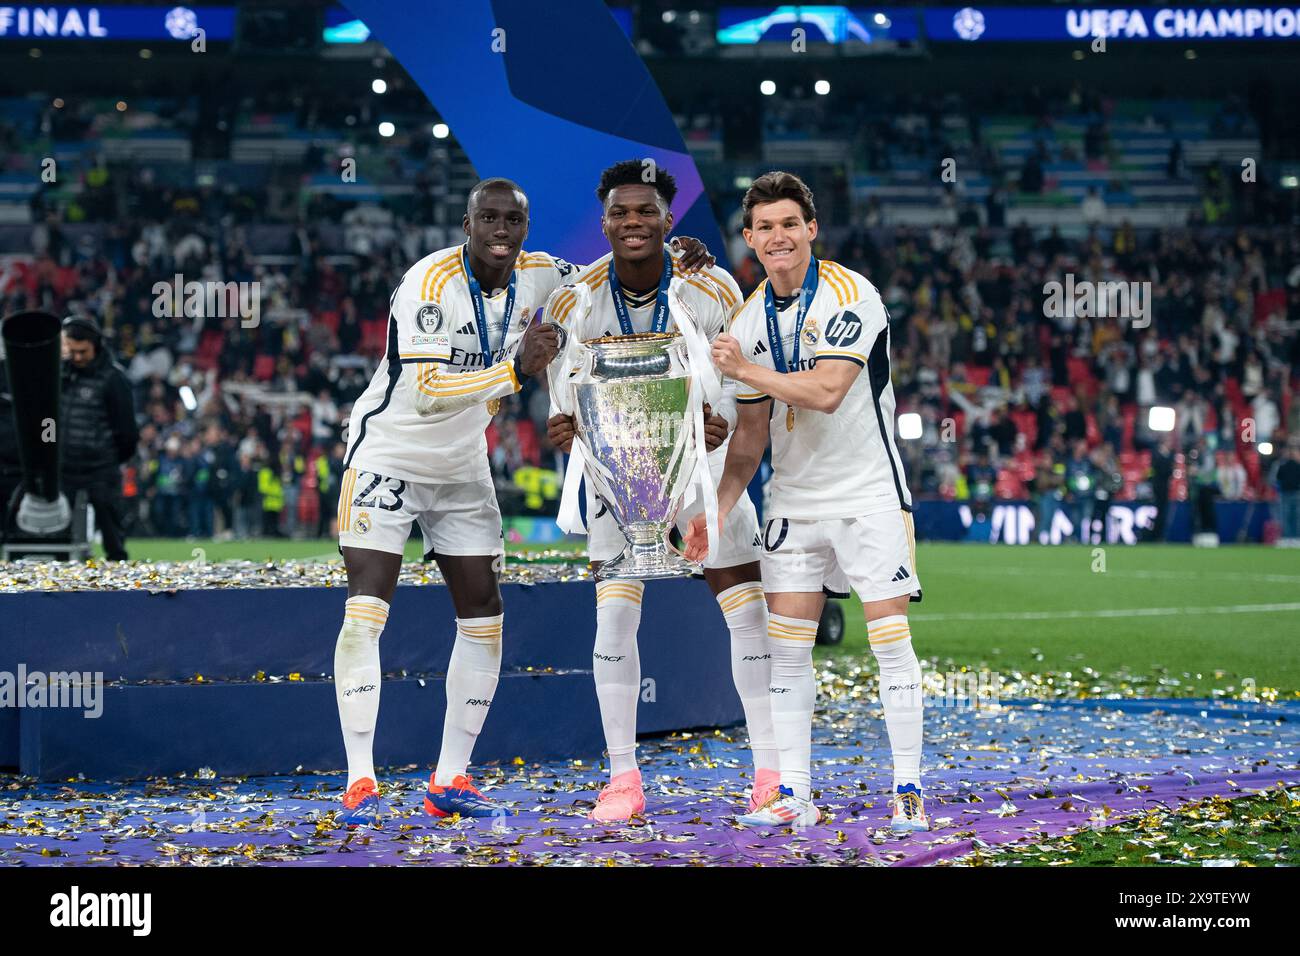 LONDRES, ANGLETERRE - 1er JUIN : Ferland Mendy, Aurelien Tchouameni et Fran Garcia du Real Madrid célèbrent leur victoire avec le trophée de la Ligue des Champions de l'UEFA Banque D'Images